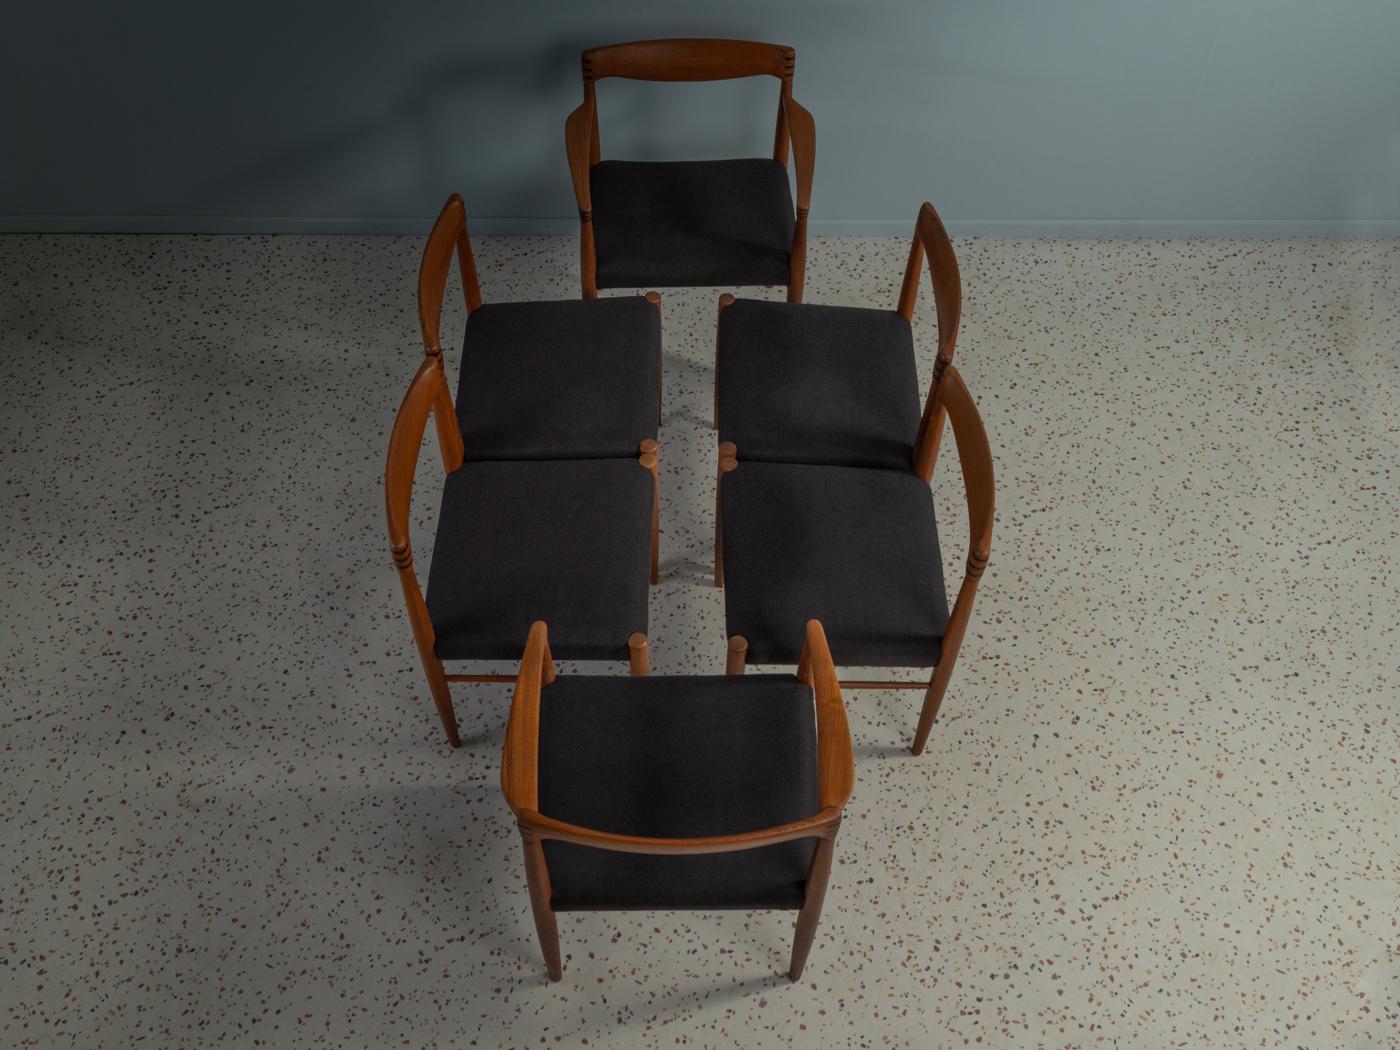 Klassische Stühle aus den 1960er Jahren von H.W. Klein für Bramin. Massiver Teakholzrahmen mit verzapfter Rückenlehne und verzapften Armlehnen. Die Stühle wurden neu gepolstert und mit einem hochwertigen Stoff in Schwarz bezogen. Das Angebot umfasst